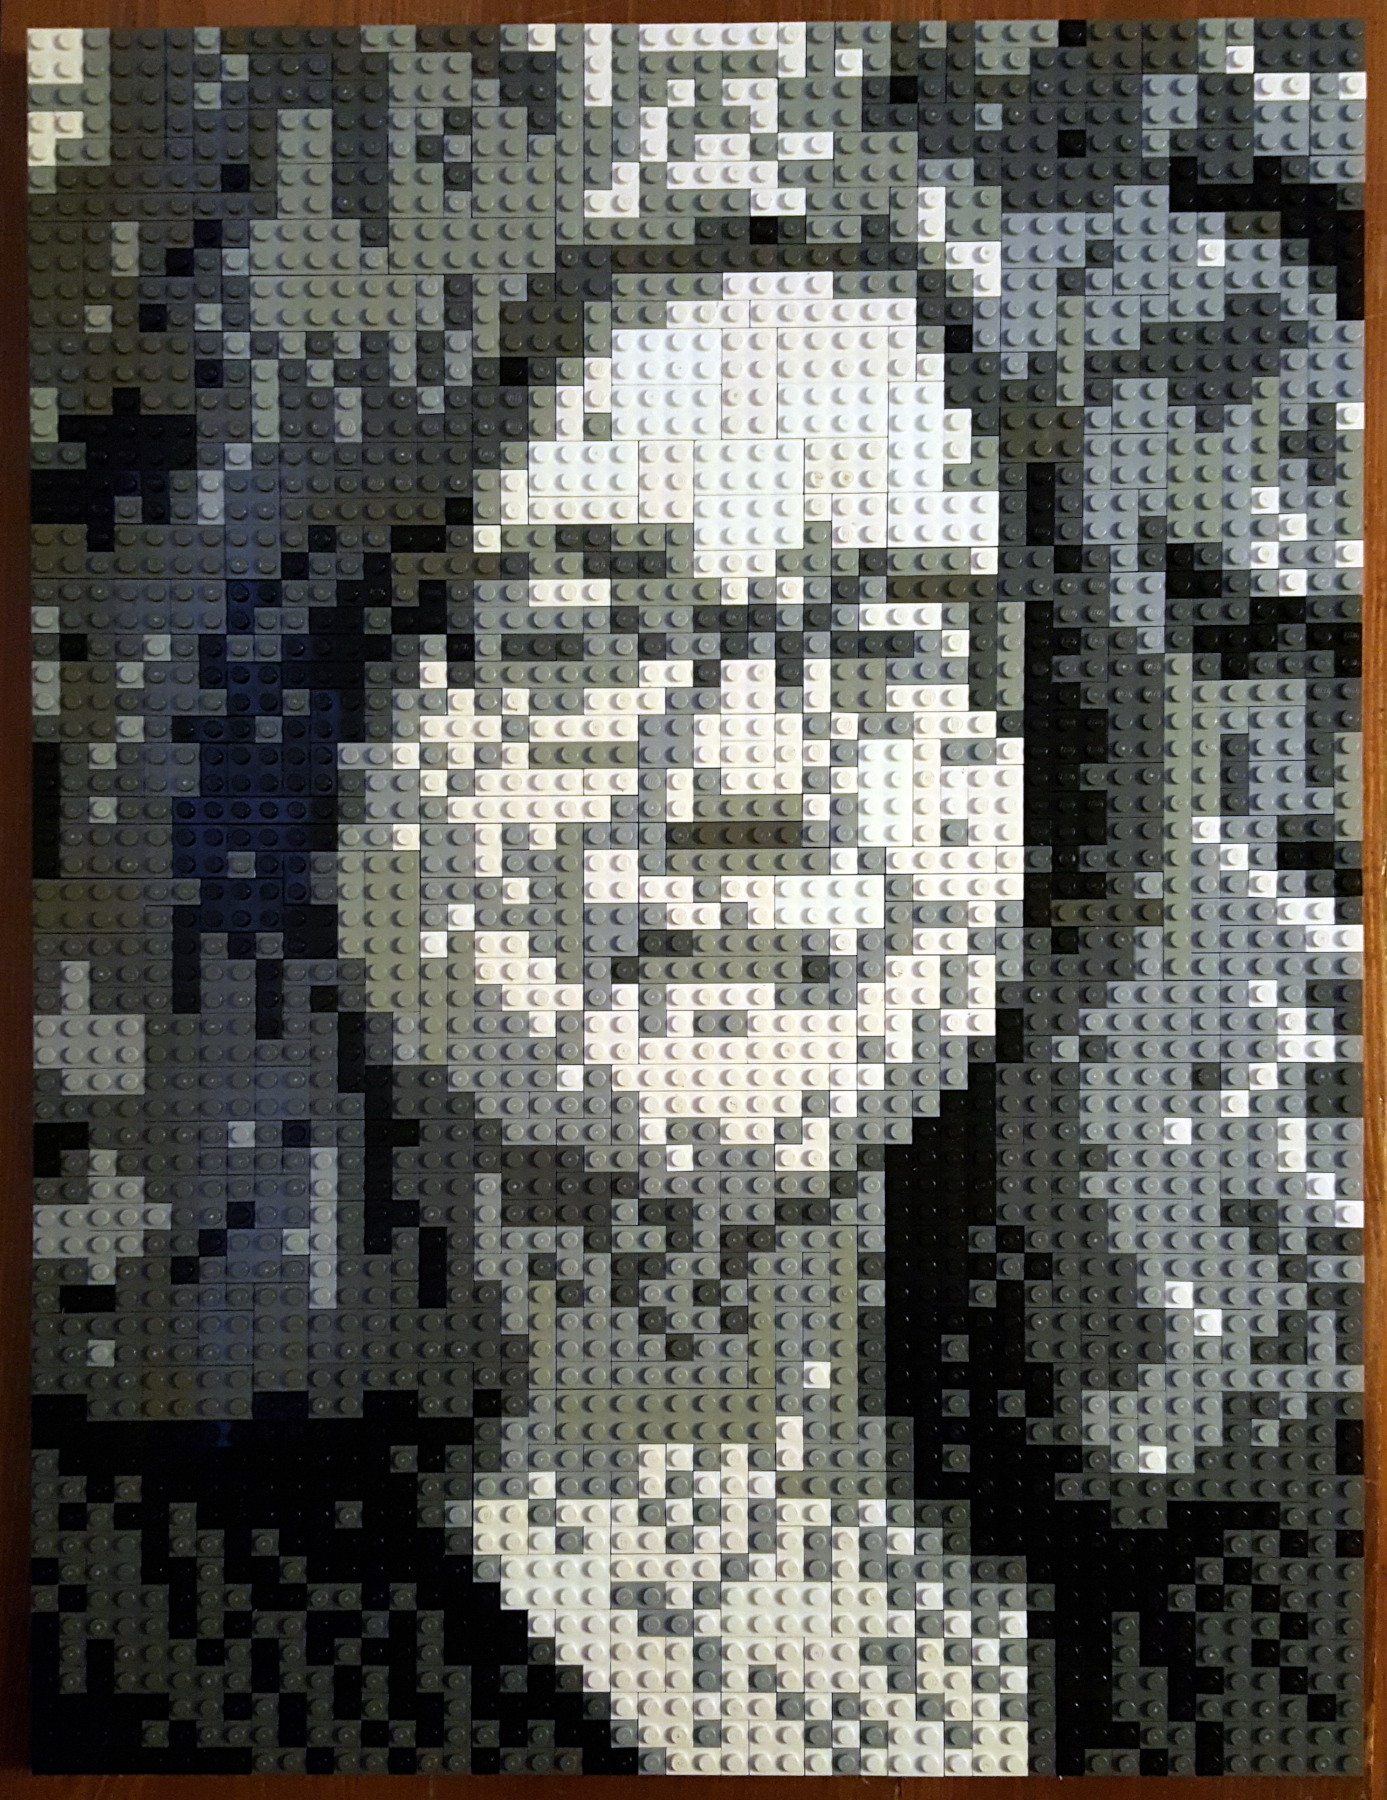 Amy in LEGO (artwork)